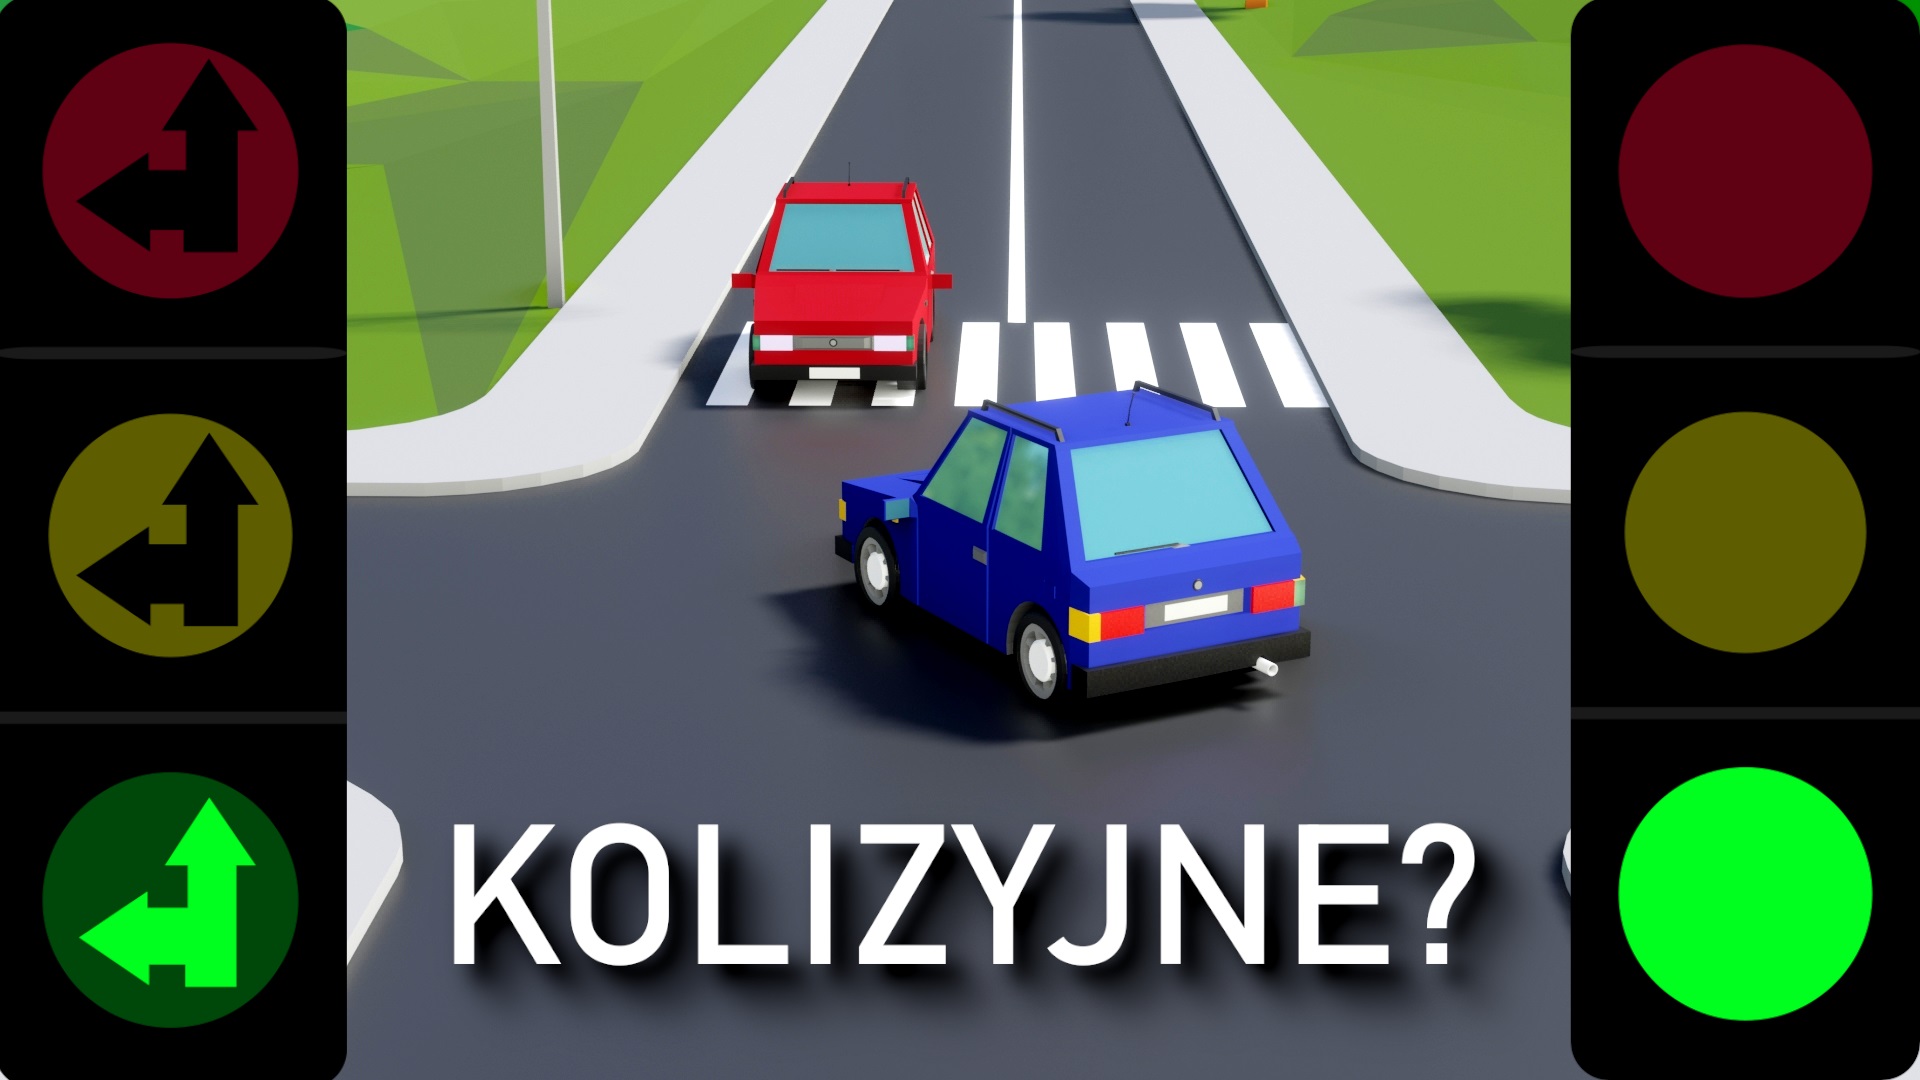 Kolizyjne Czy Bezkolizyjne? Olsztyńscy Policjanci Wyjasniają! - Aktualności - Komenda Miejska Policji W Olsztynie